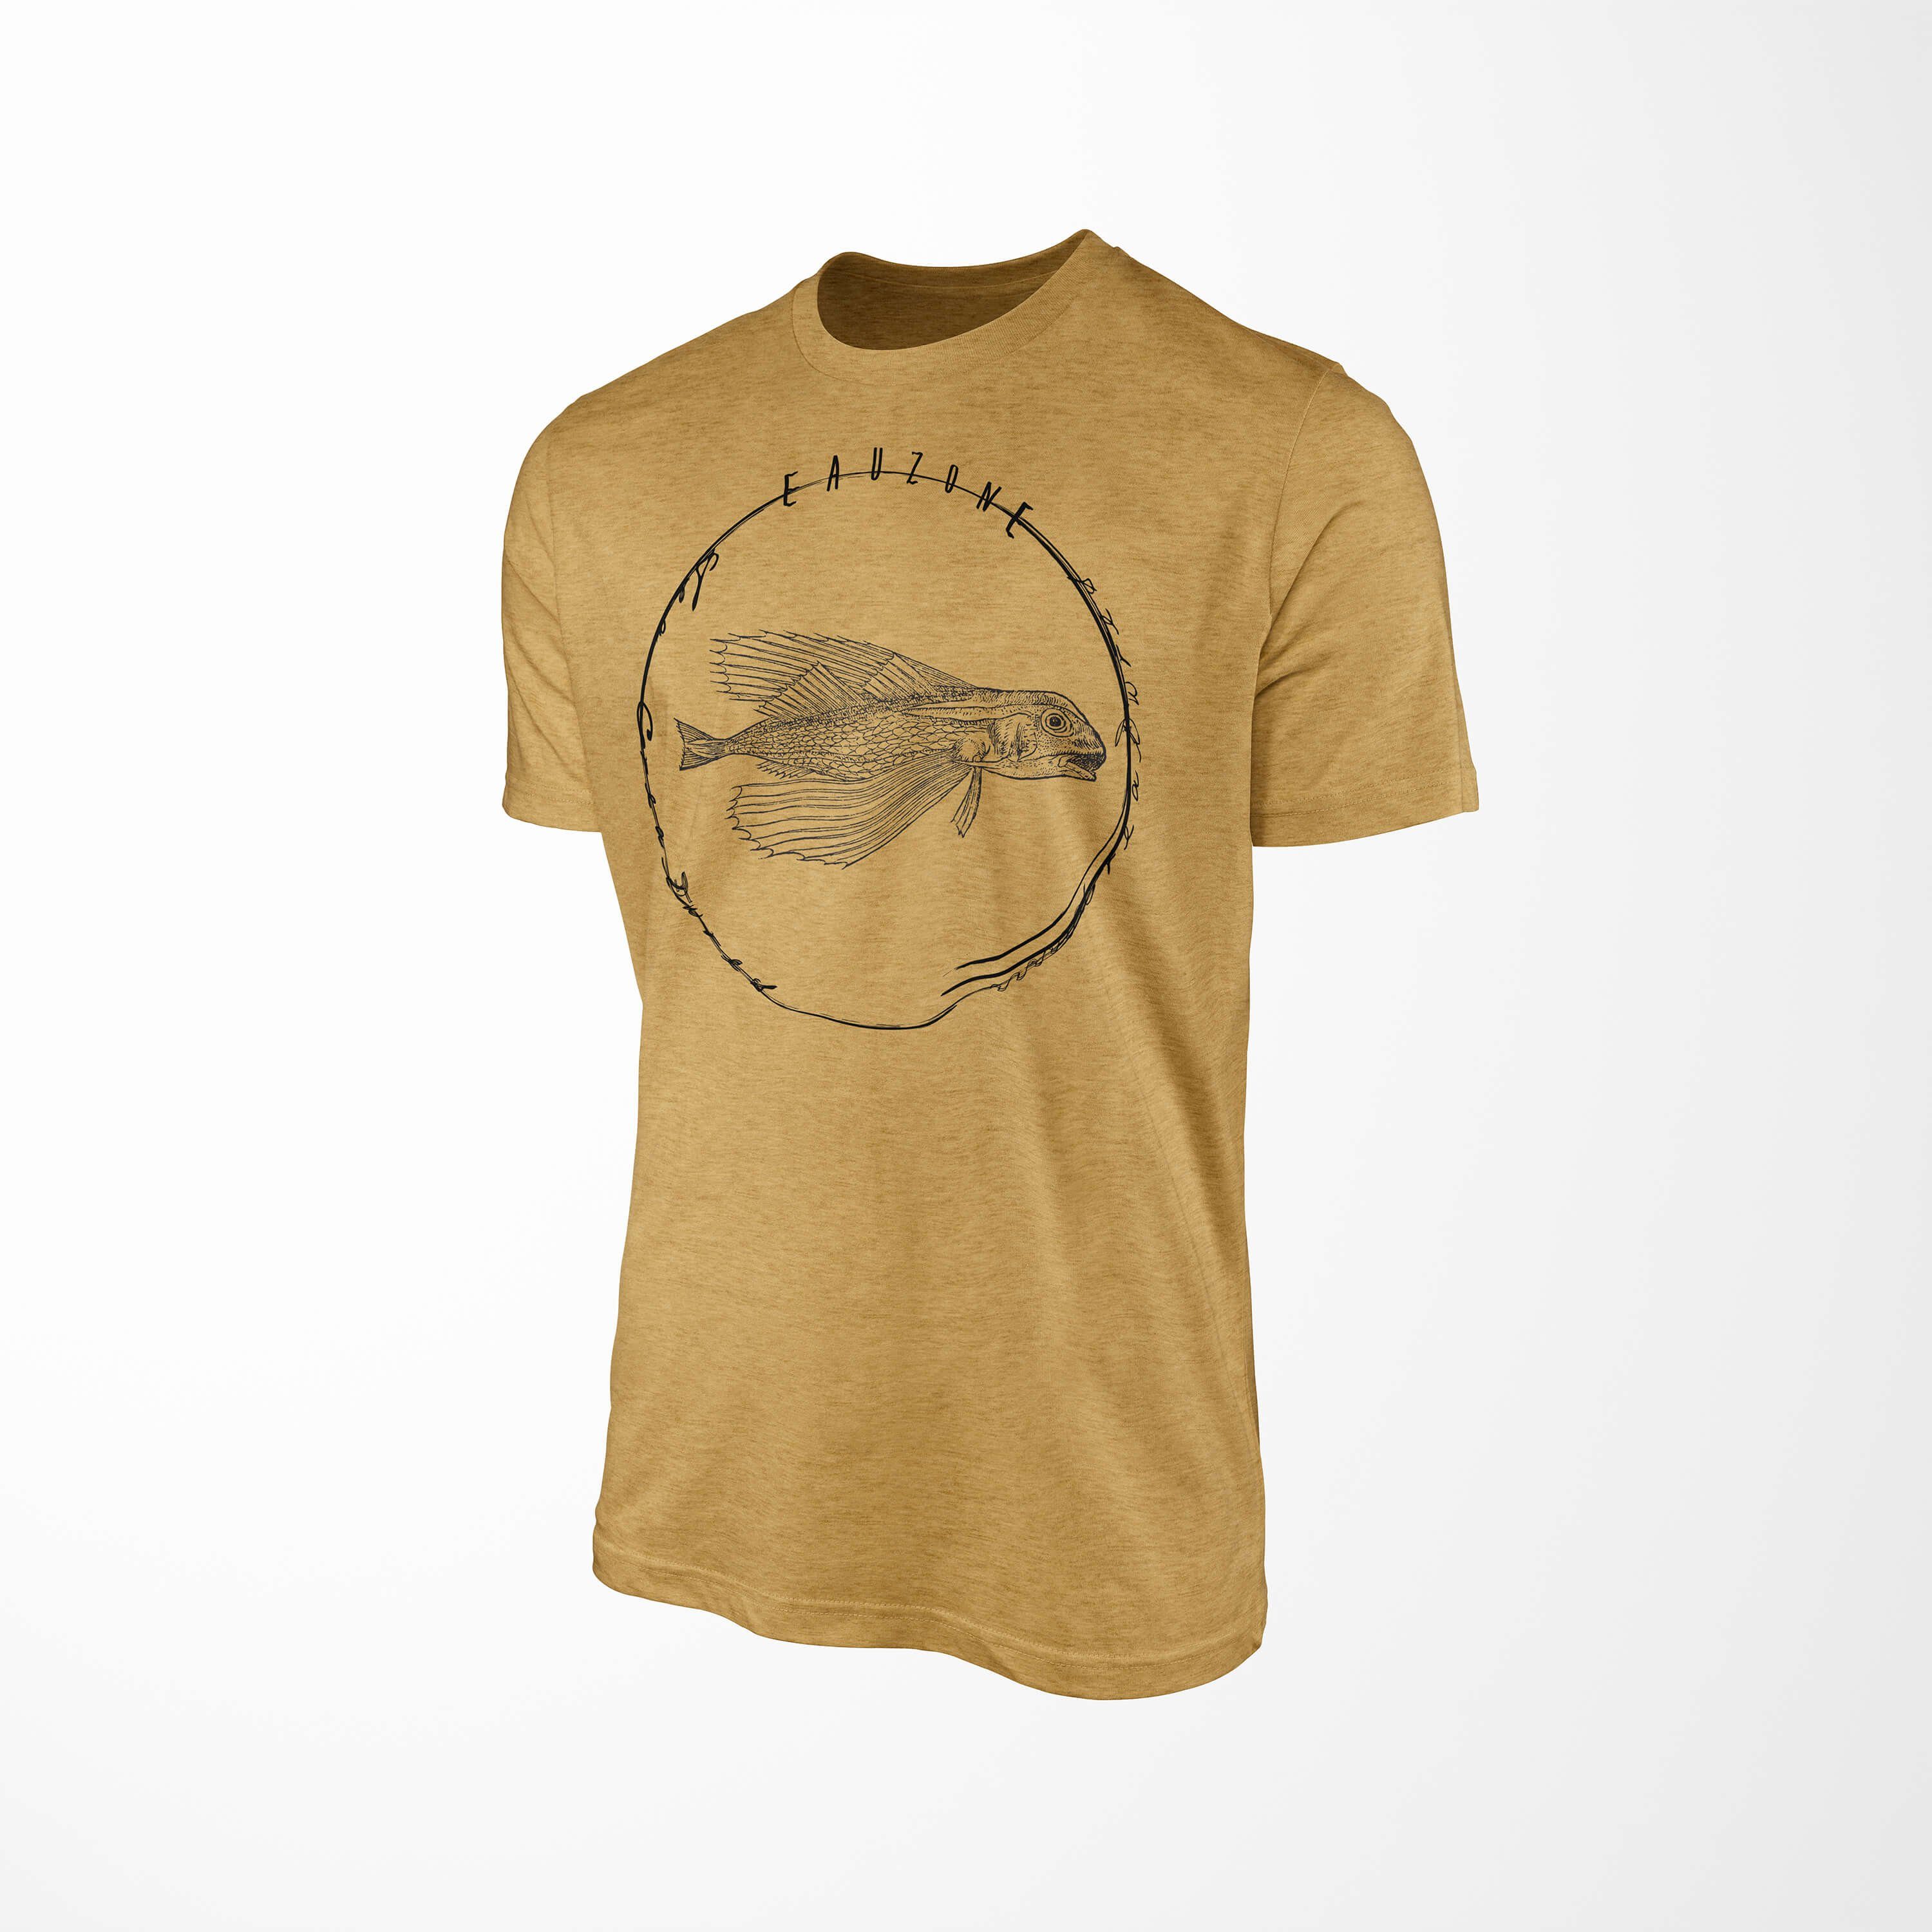 Sea und Schnitt Antique T-Shirt Sinus Tiefsee Fische 061 Serie: / T-Shirt Art Creatures, - Struktur sportlicher Sea Gold feine